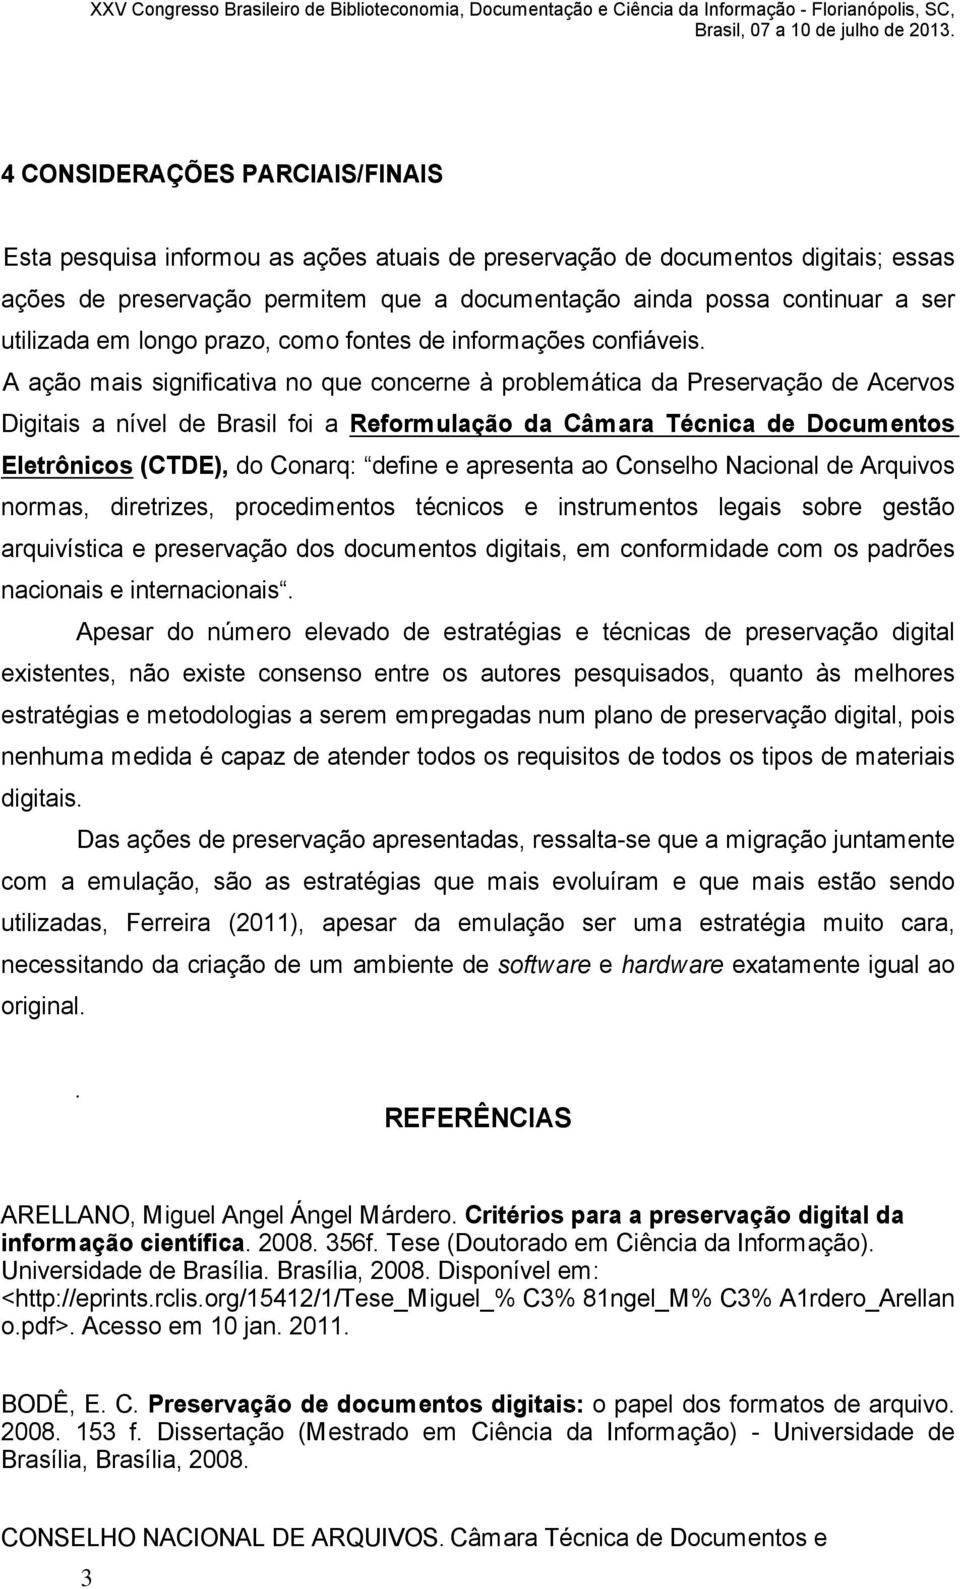 A a o mais significativa no que concerne problem tica da Preserva o de Acervos Digitais a n vel de Brasil foi a Reformula o da C mara T cnica de Documentos Eletr nicos (CTDE), do Conarq: define e